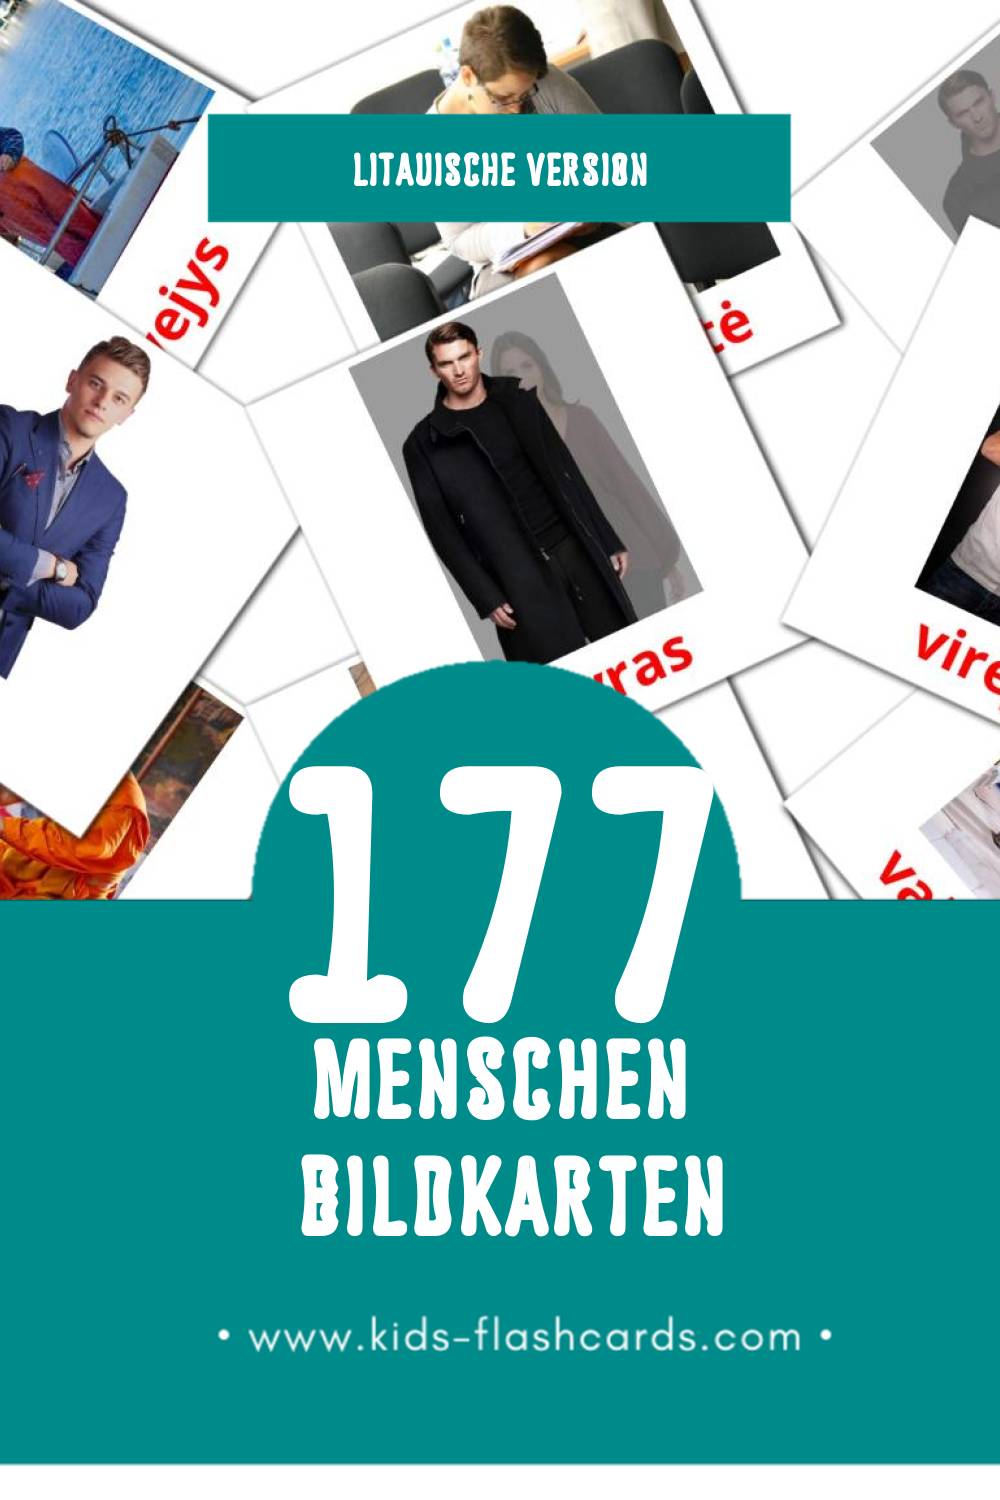 Visual Žmonės Flashcards für Kleinkinder (177 Karten in Litauisch)